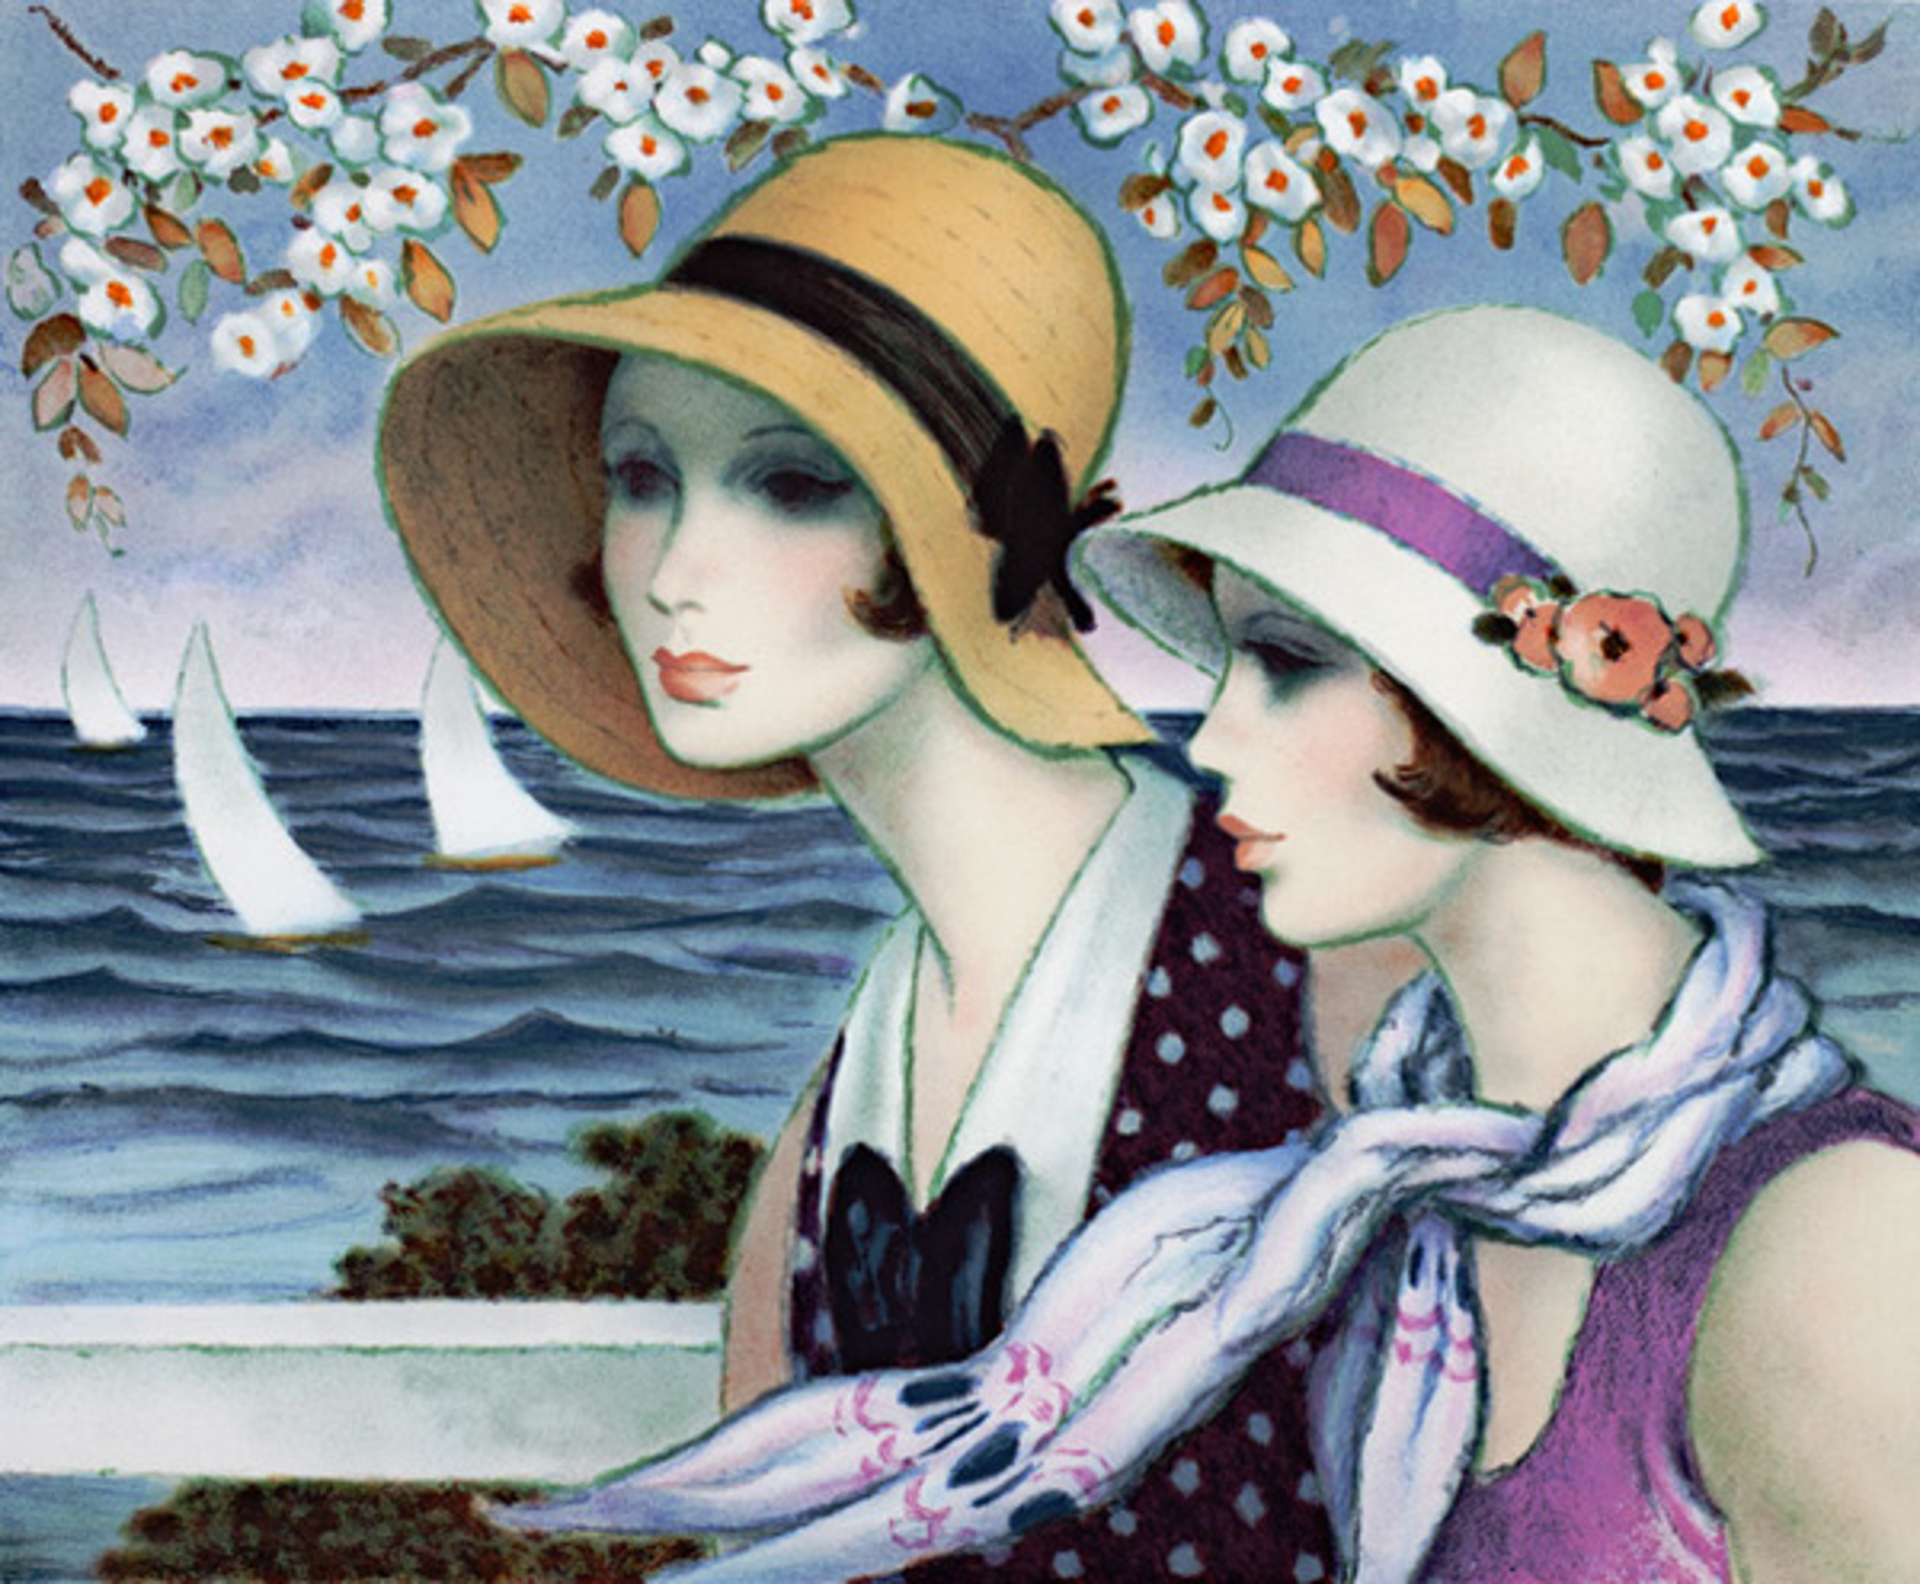 Femmes au Bord de la Mer (Women on the edge of the Sea) by Francois Batet